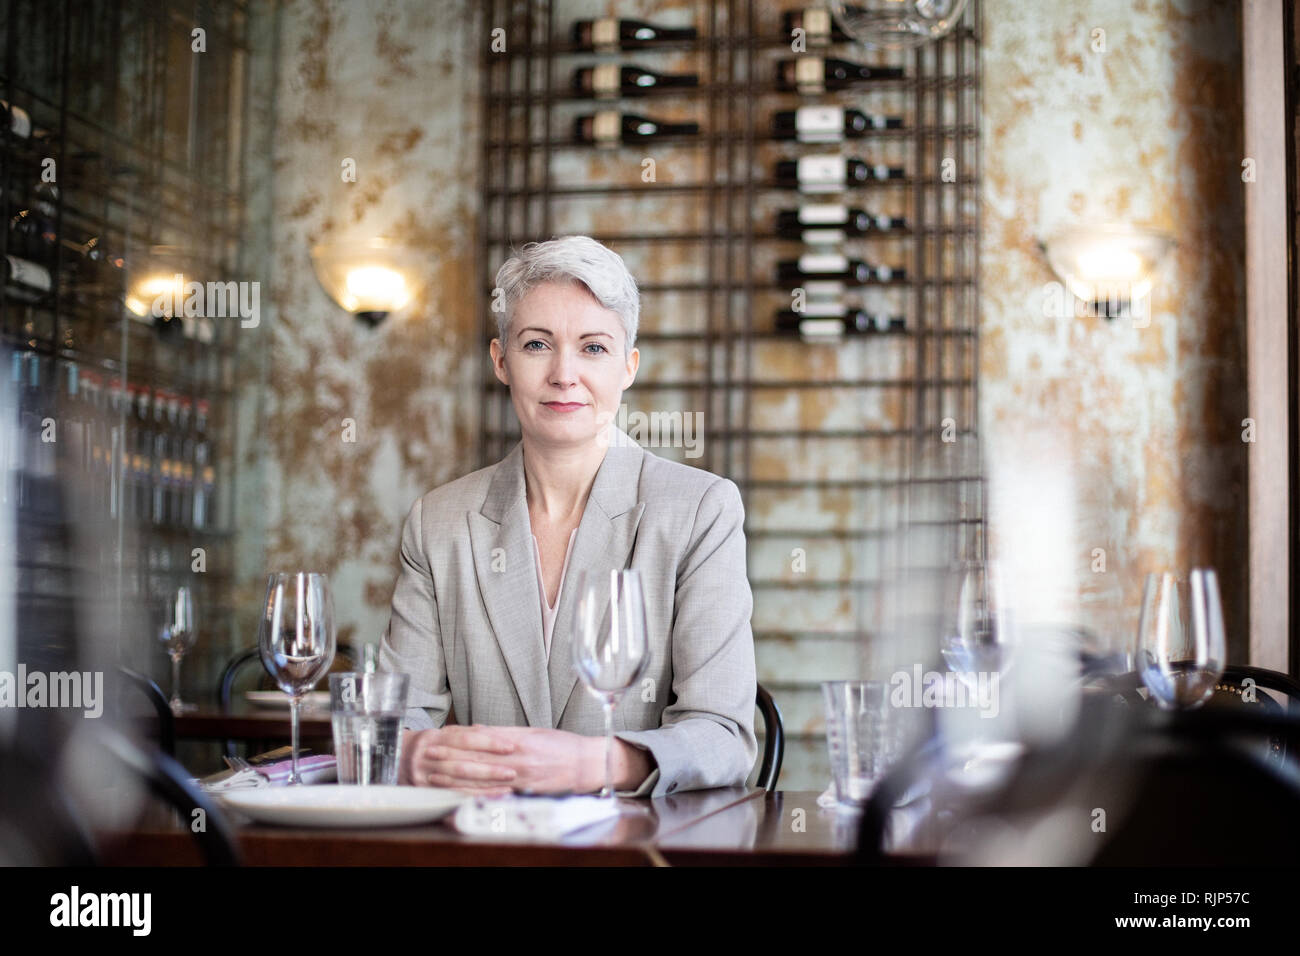 Portrait of businesswoman in a restaurant Banque D'Images